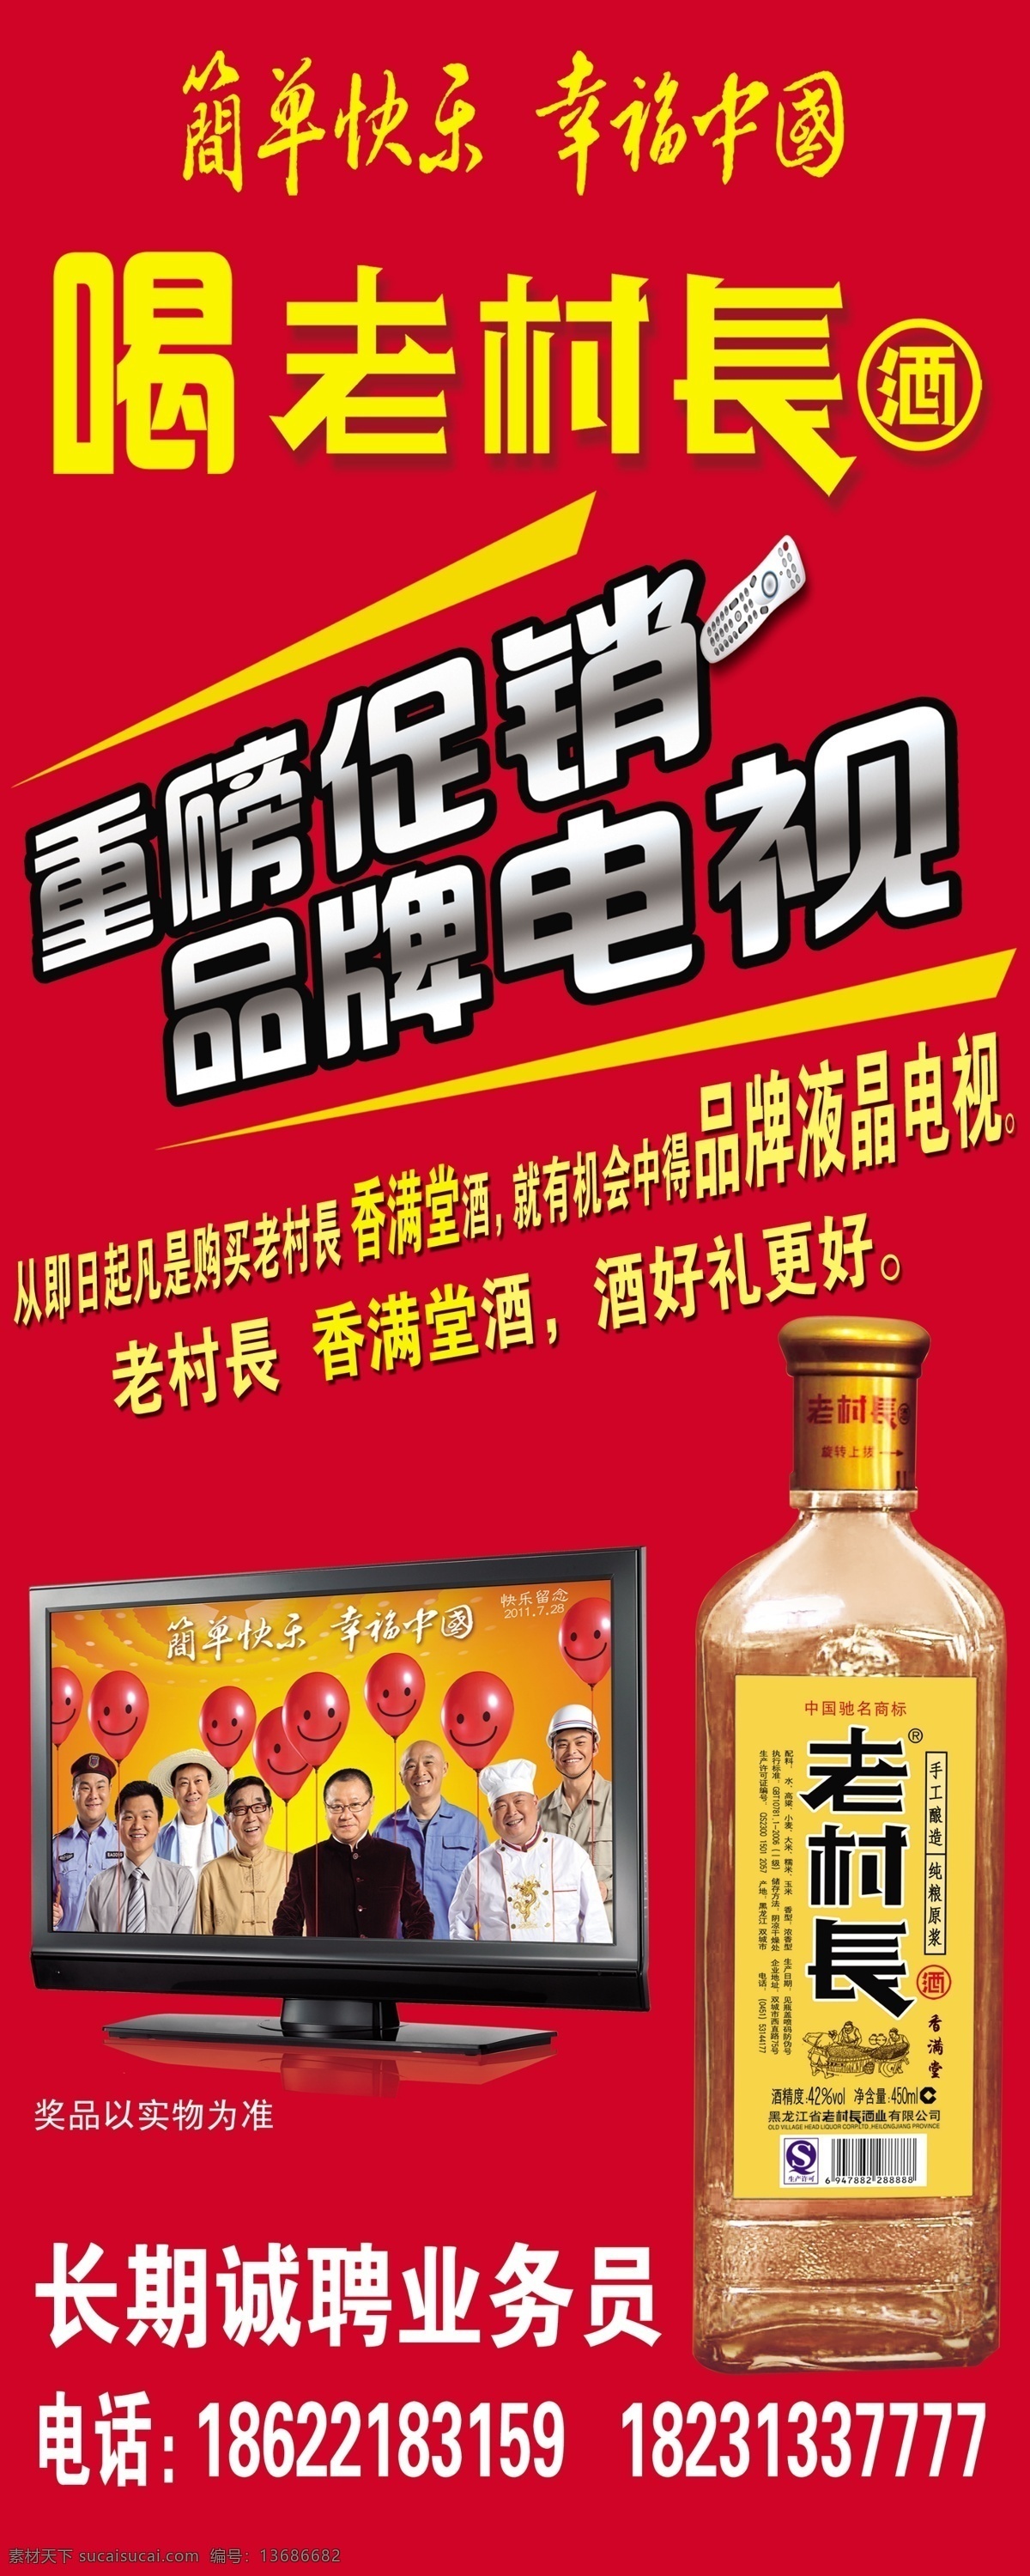 老 村长 酒 彩电 电视 广告设计模板 酒瓶 液晶电视 源文件 老村长酒 其他海报设计